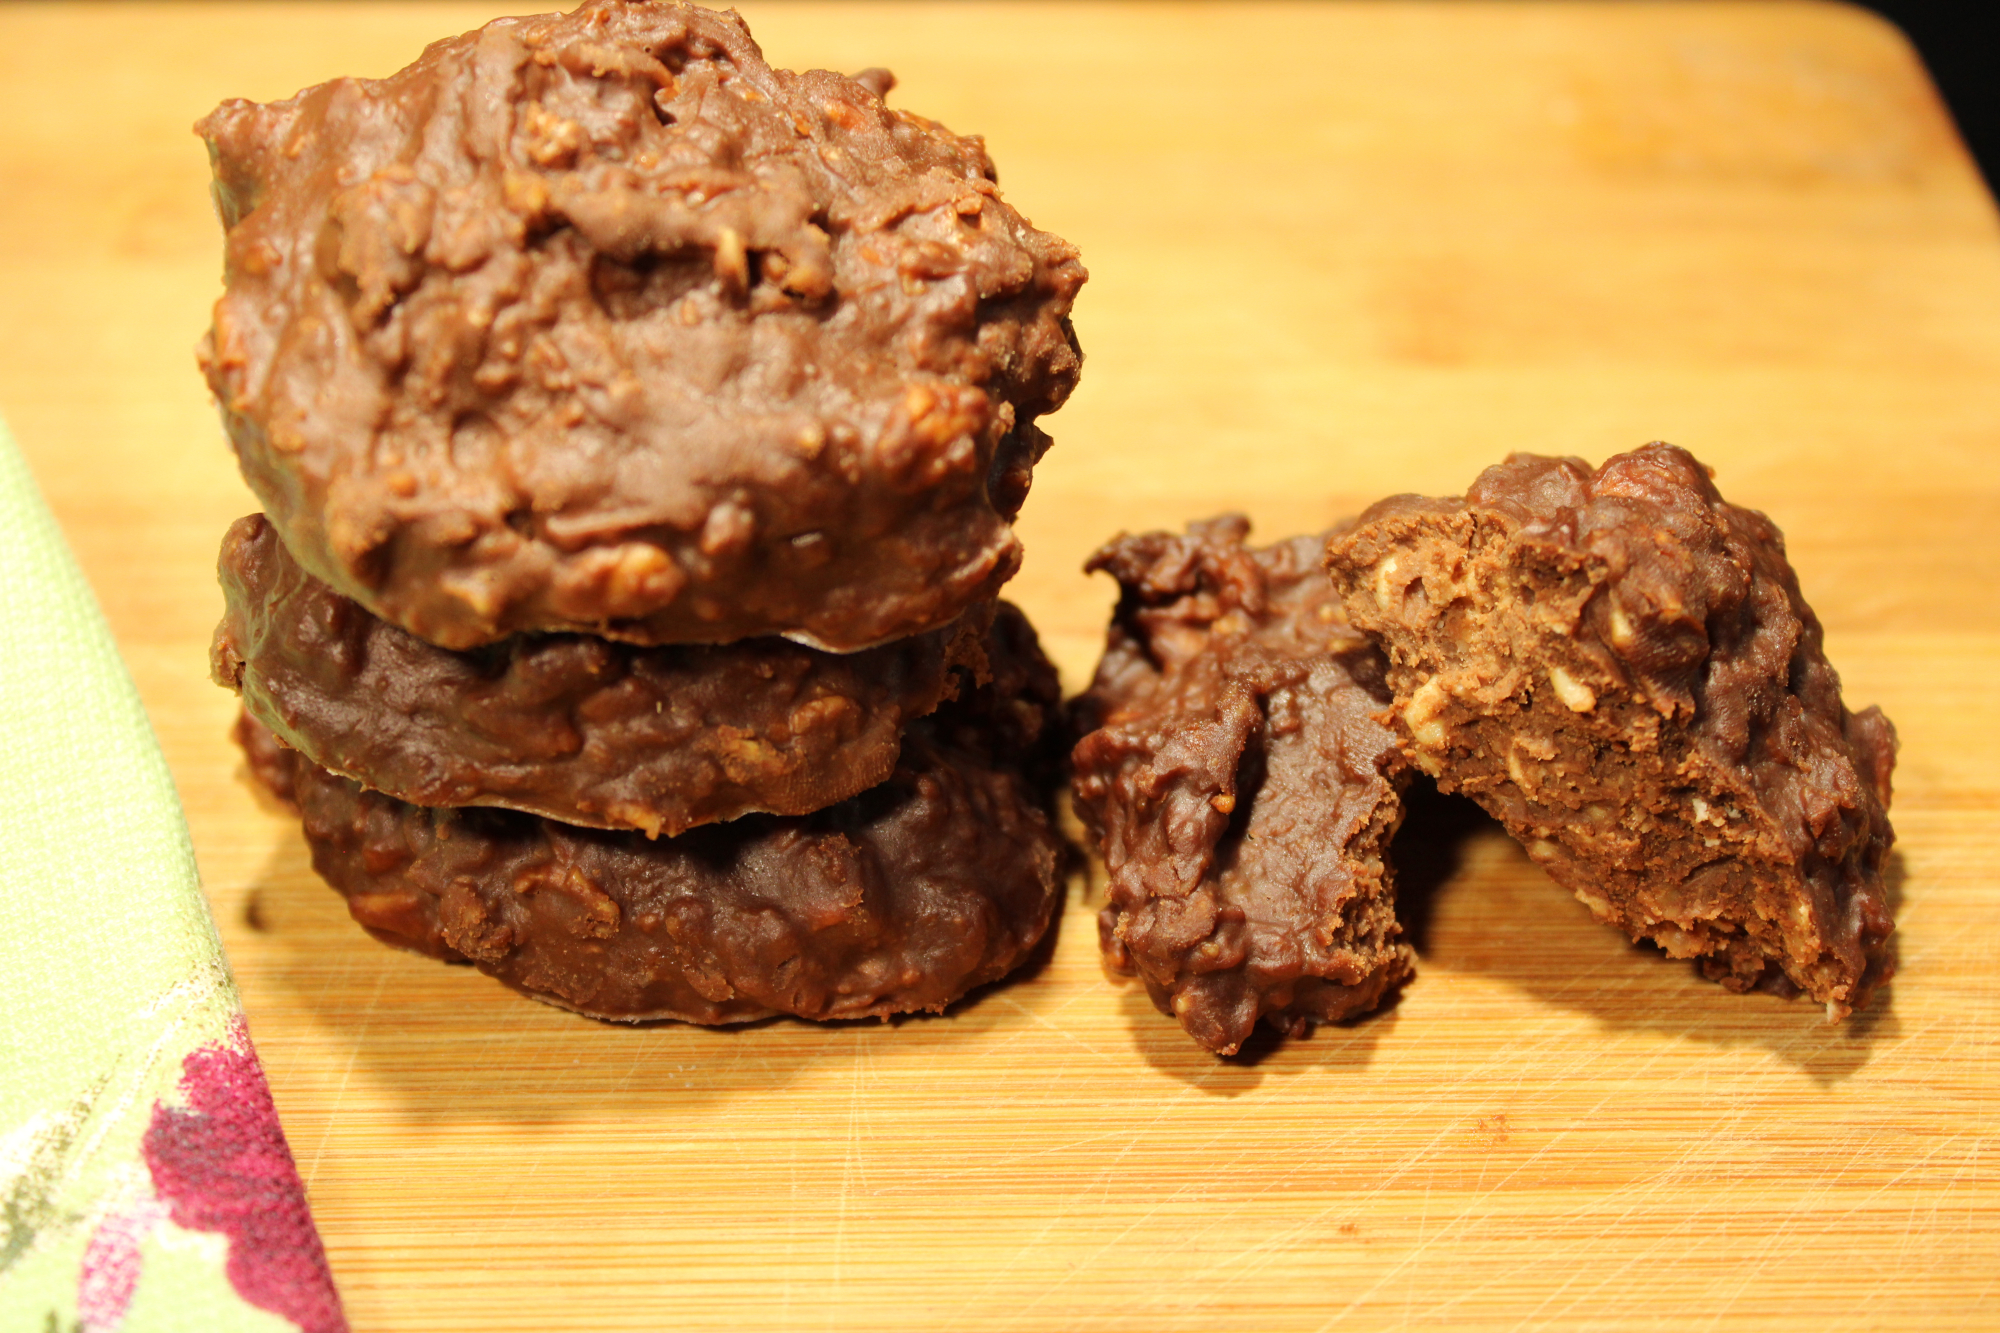 Healthy No-Bake Oatmeal Cookies